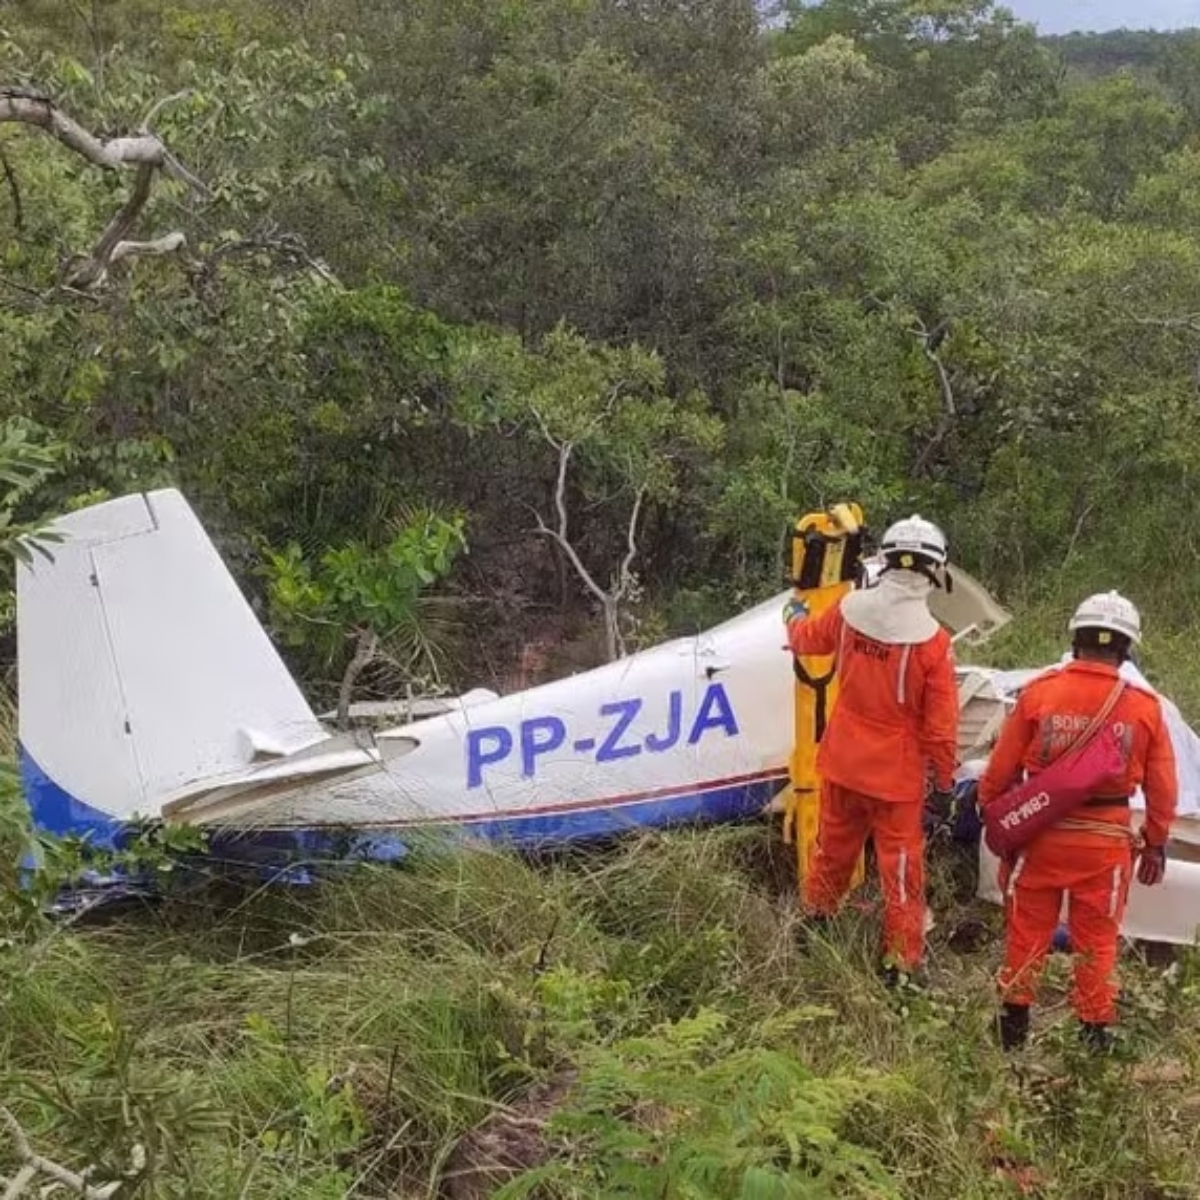  Queda de avião deixa 3 pessoas mortas; pai e filho estão entre as vítimas 